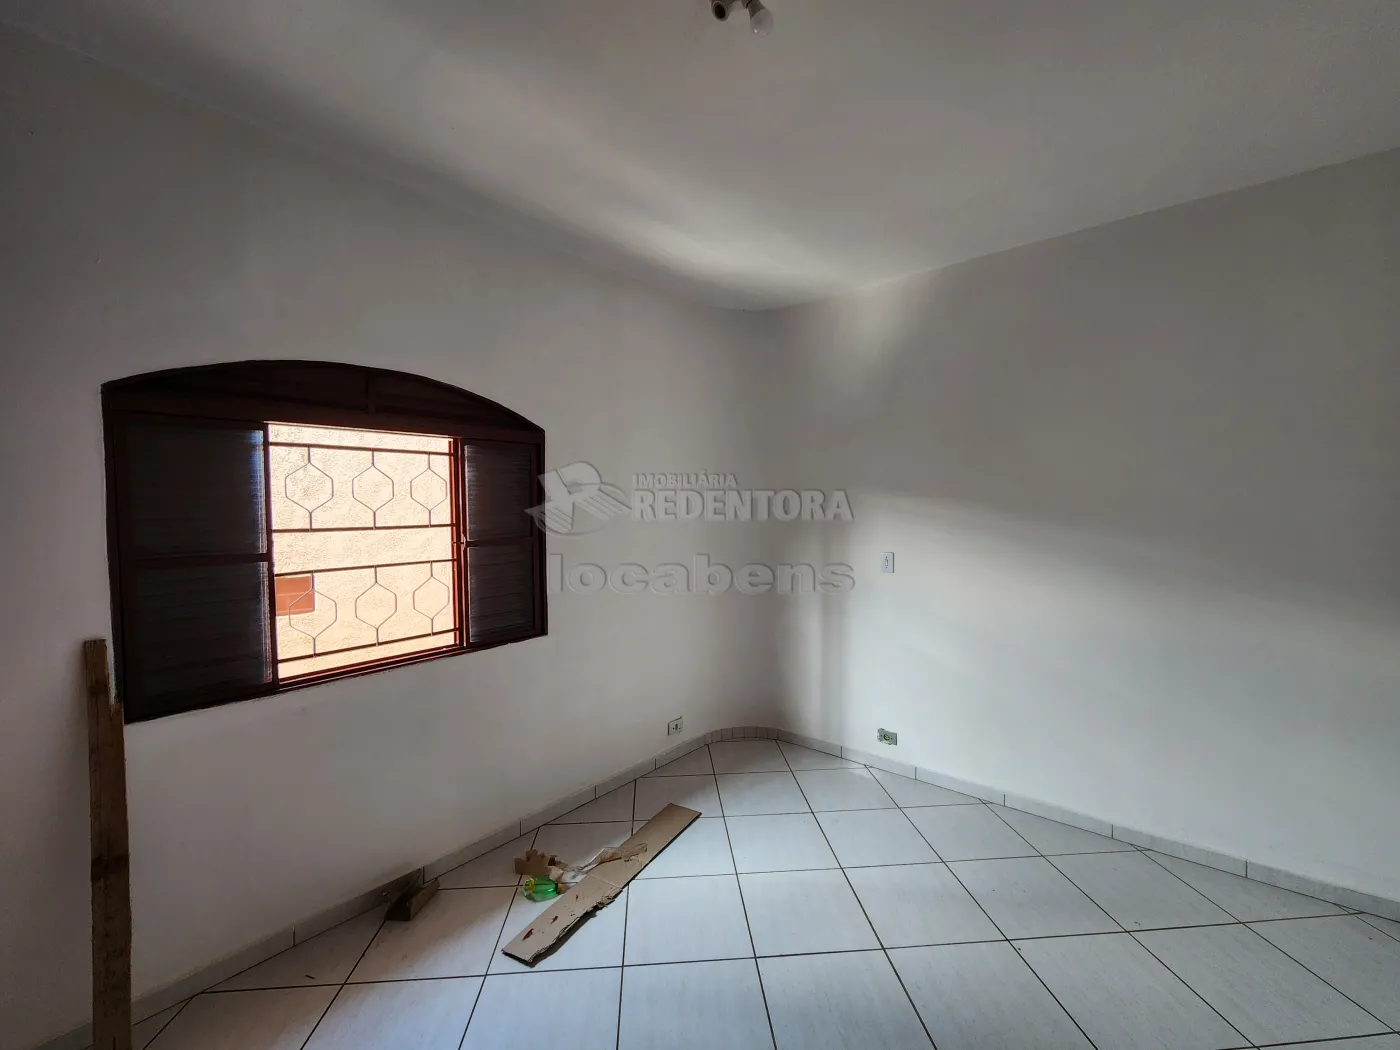 Alugar Casa / Padrão em São José do Rio Preto R$ 2.700,00 - Foto 7